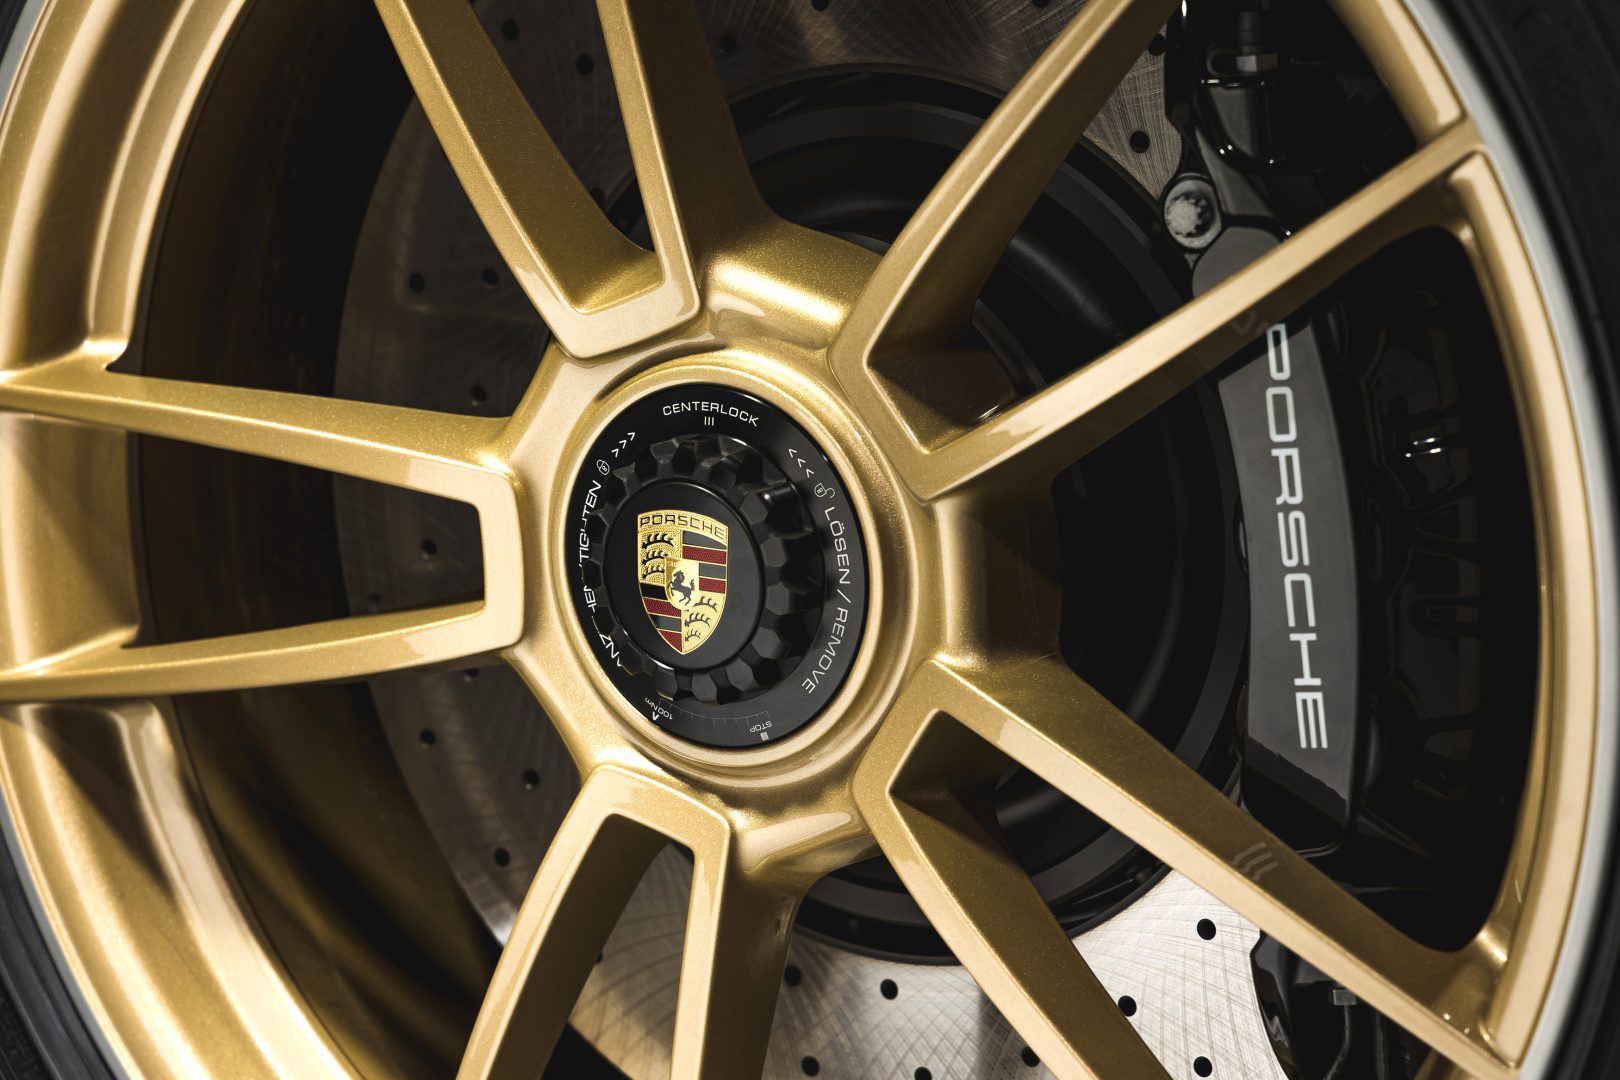 Kultaiset Porsche vanteet ja logo keskiössä.